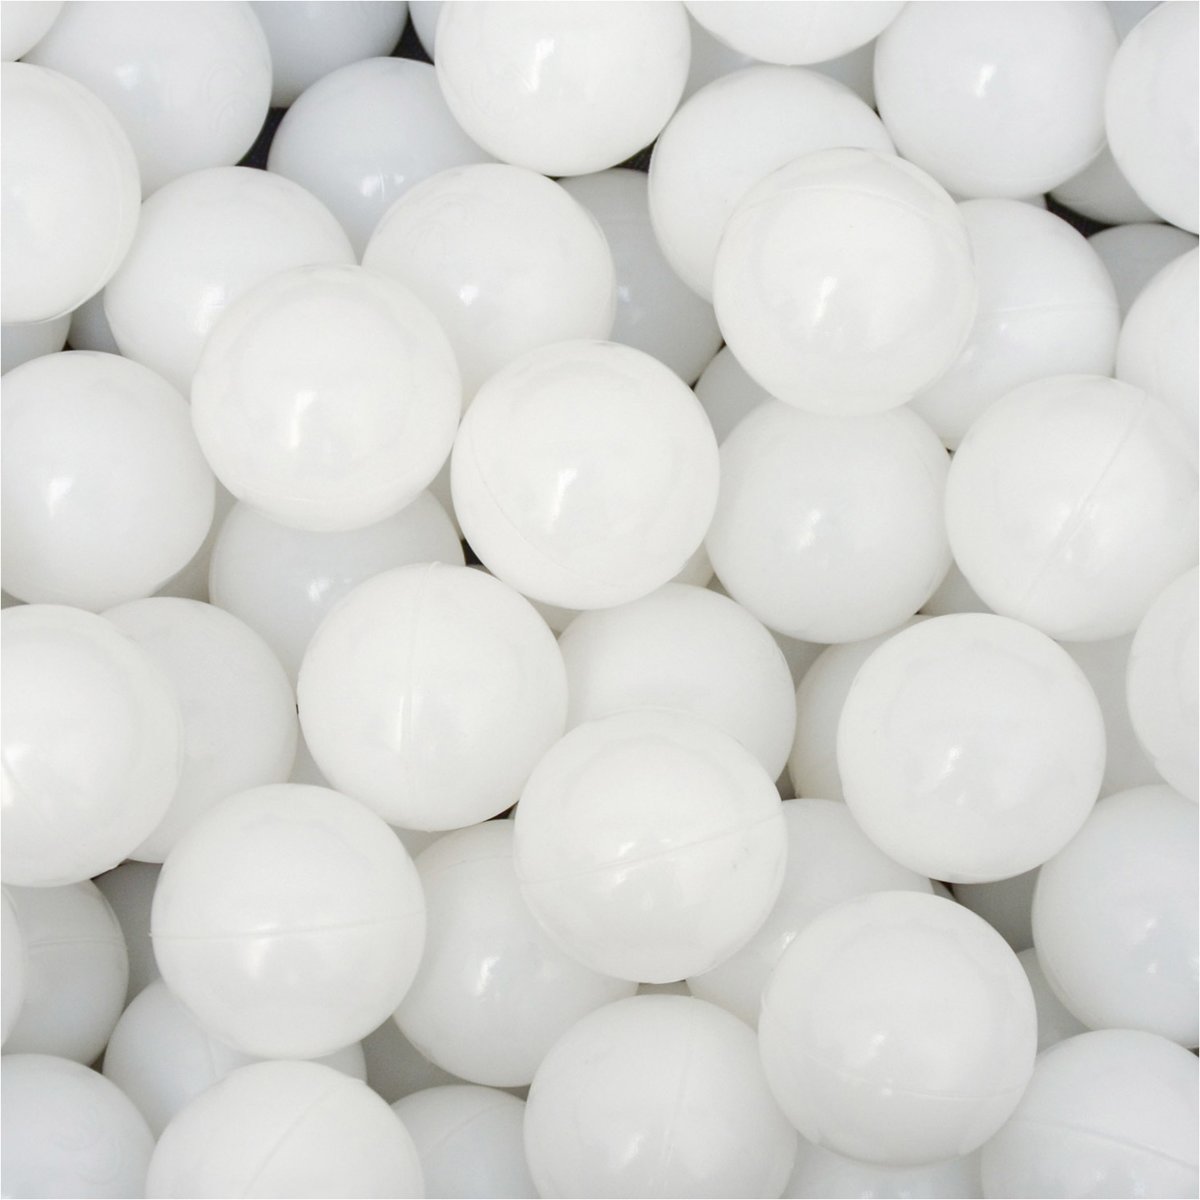 50 Babybalballen 5,5 cm Kinderballenbadje Kunststofballen Babyballen Wit